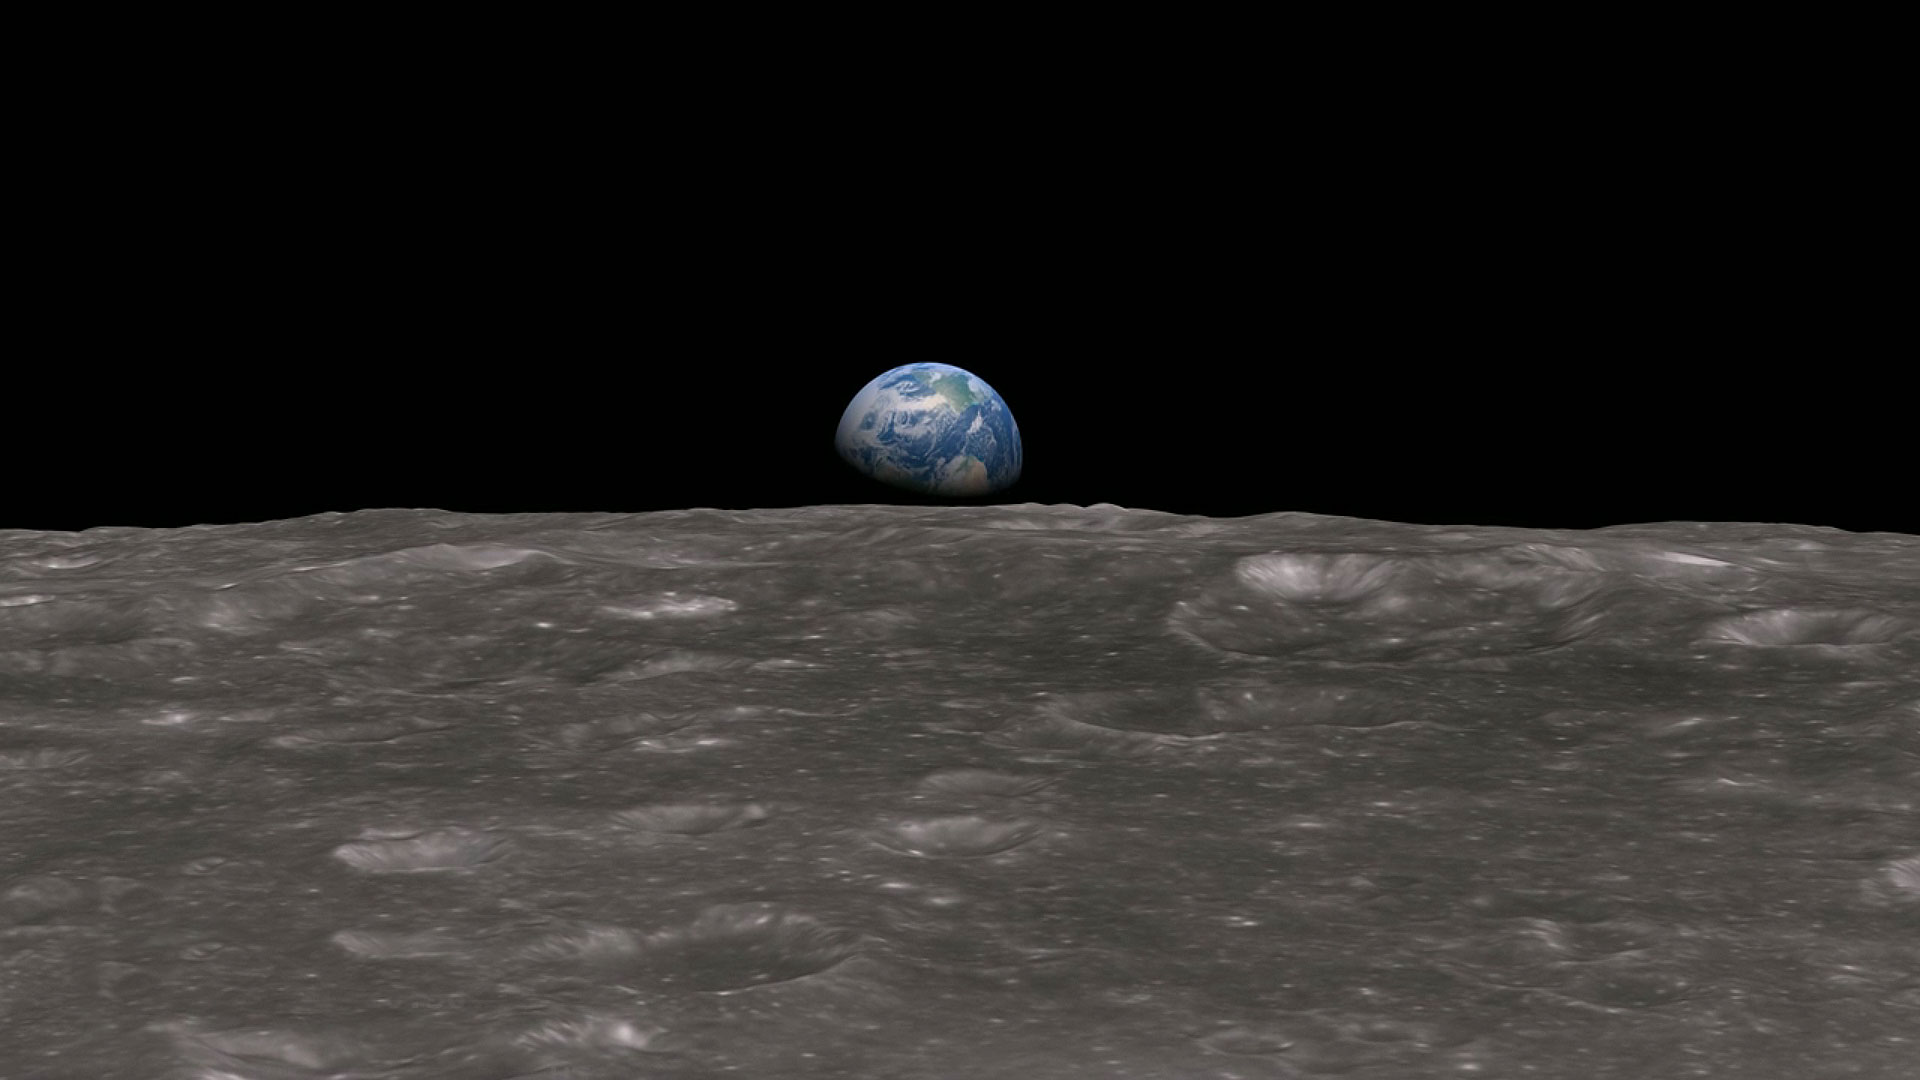 Premier lever de Terre vu de la Lune, 24 décembre 1968